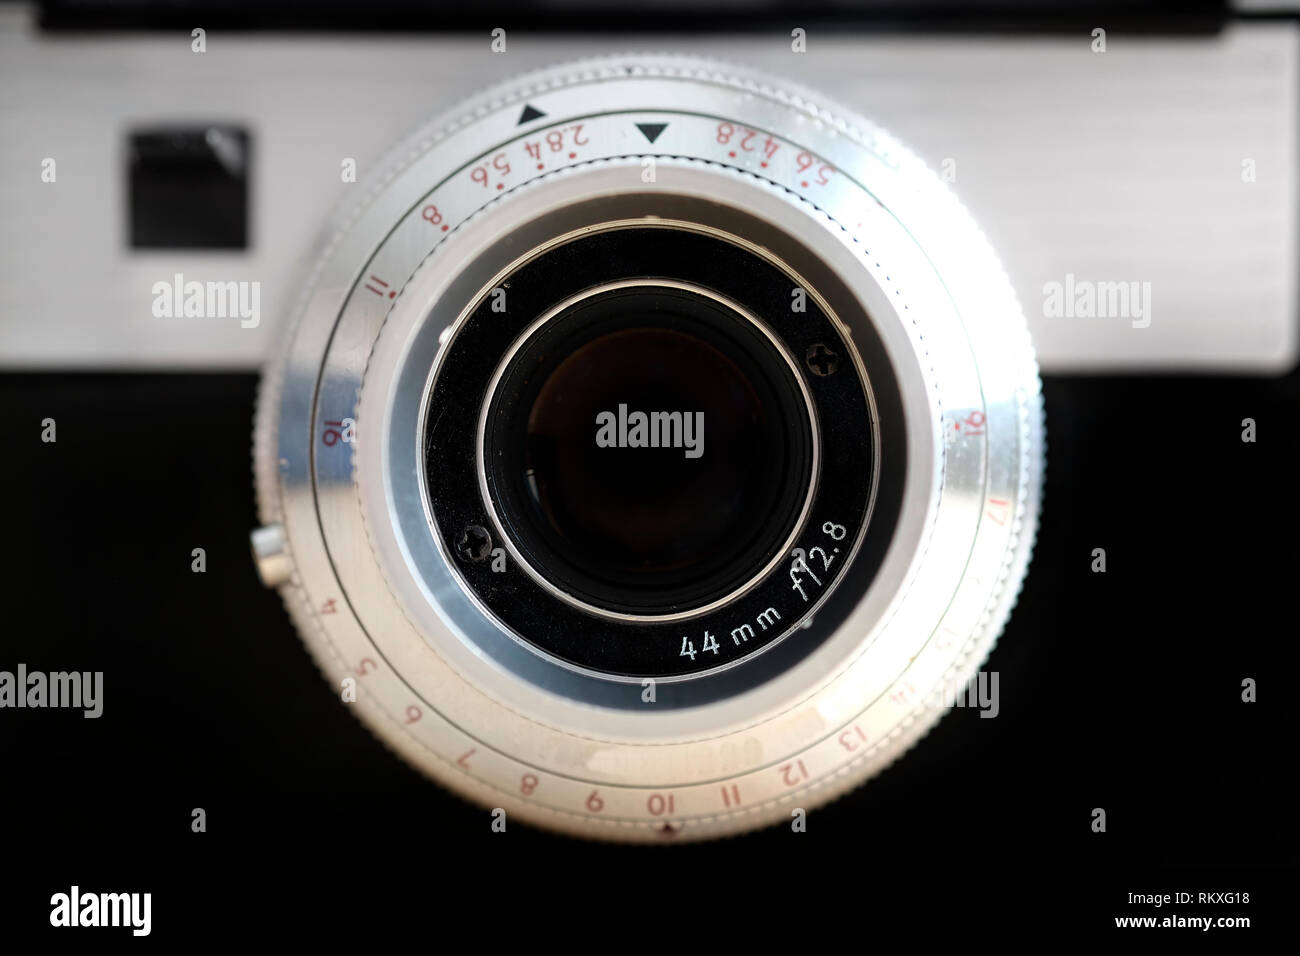 Ancien appareil photo avec un objectif manuel Équipement de photographie pour capturer des images Banque D'Images